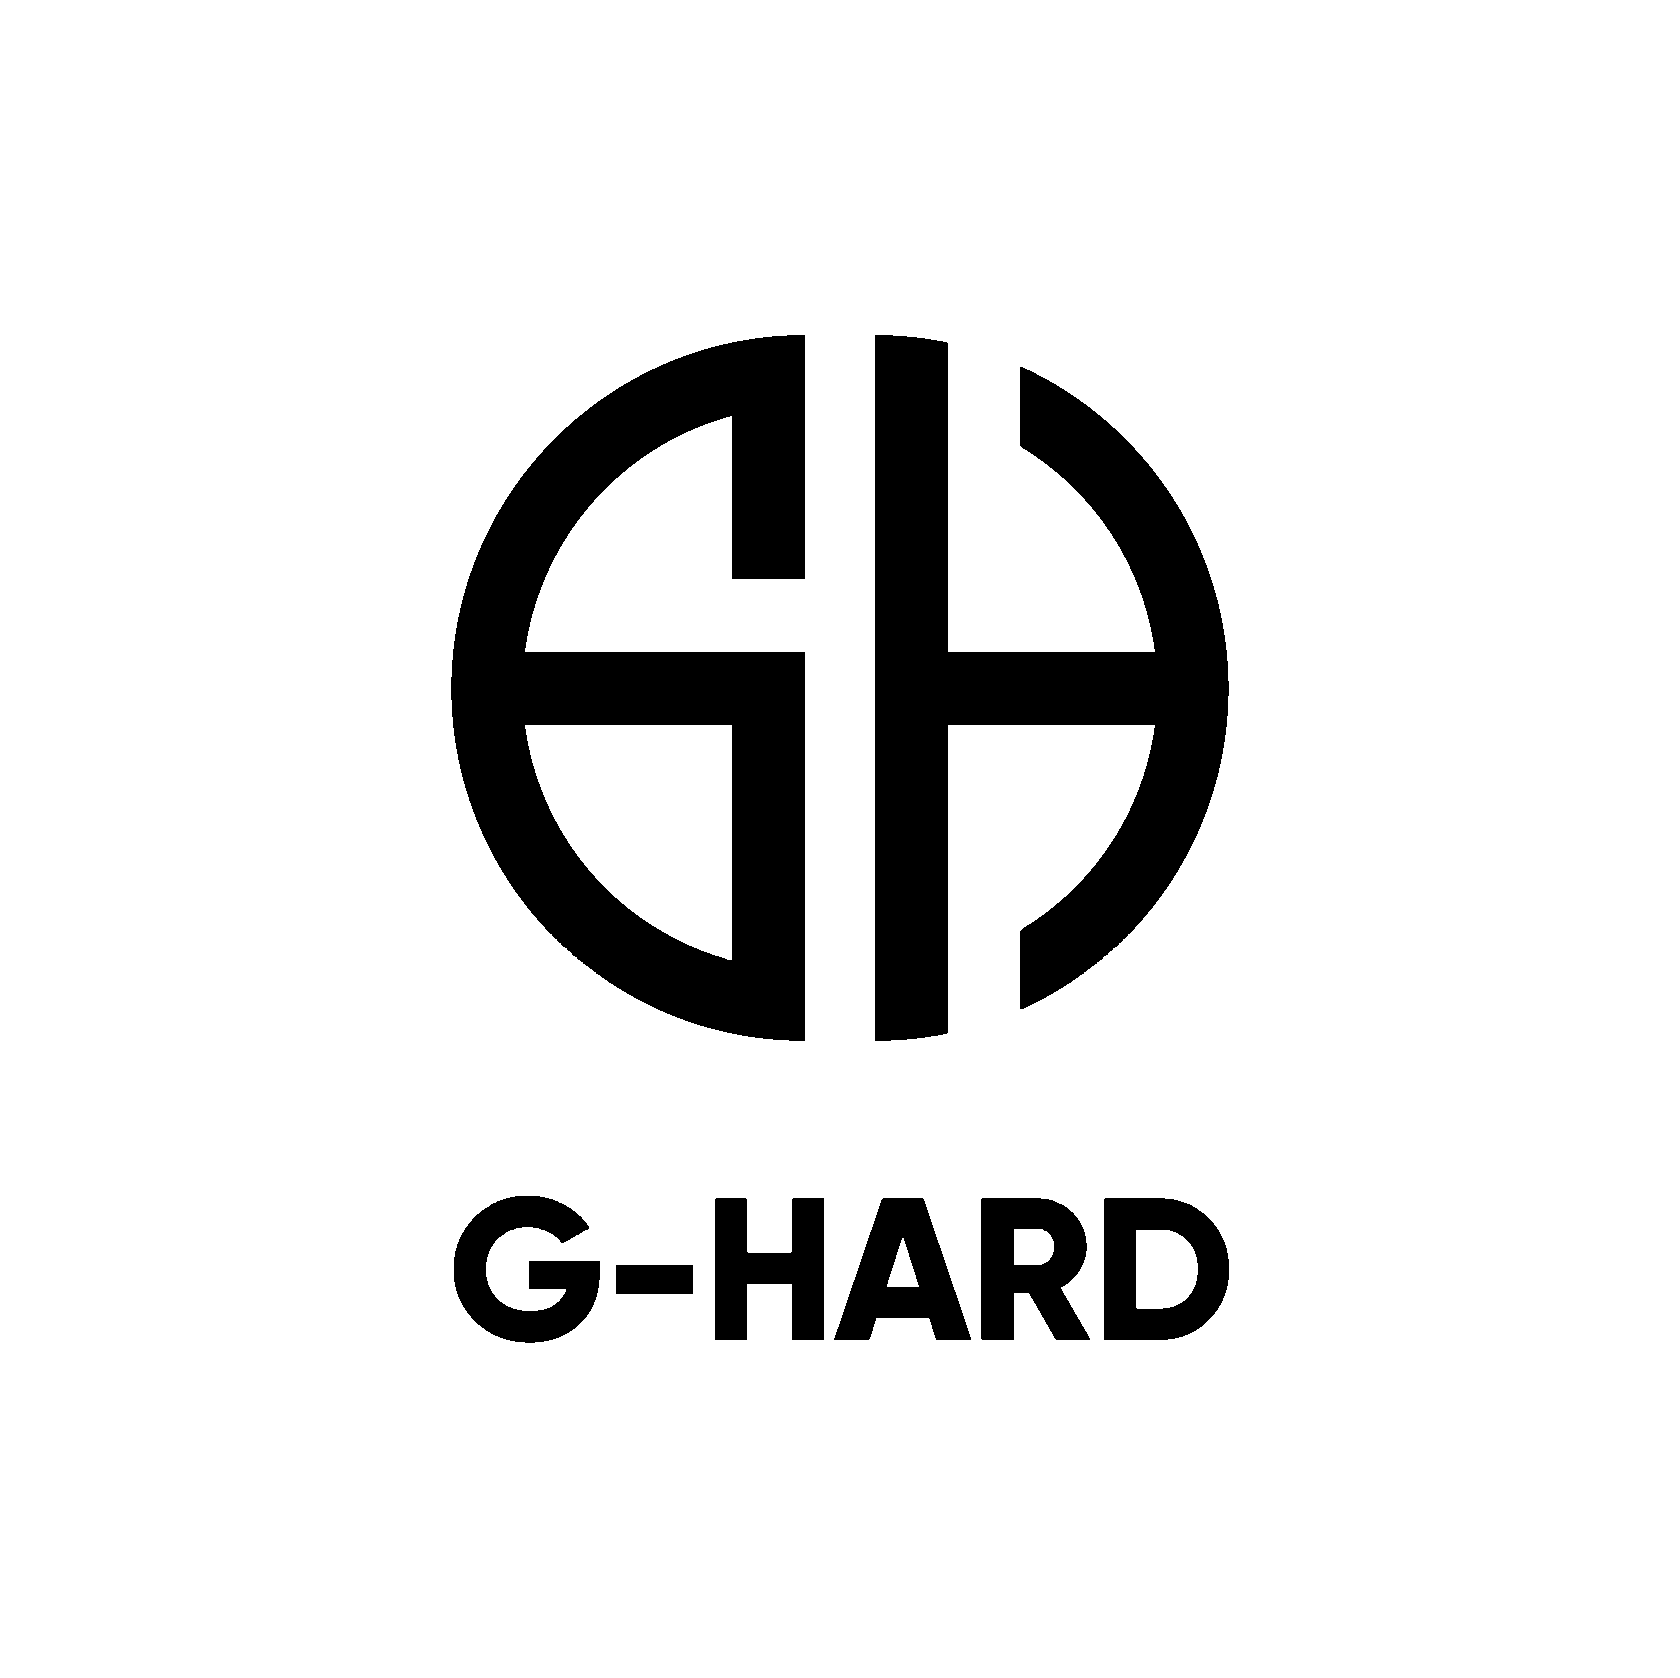 G-Hard